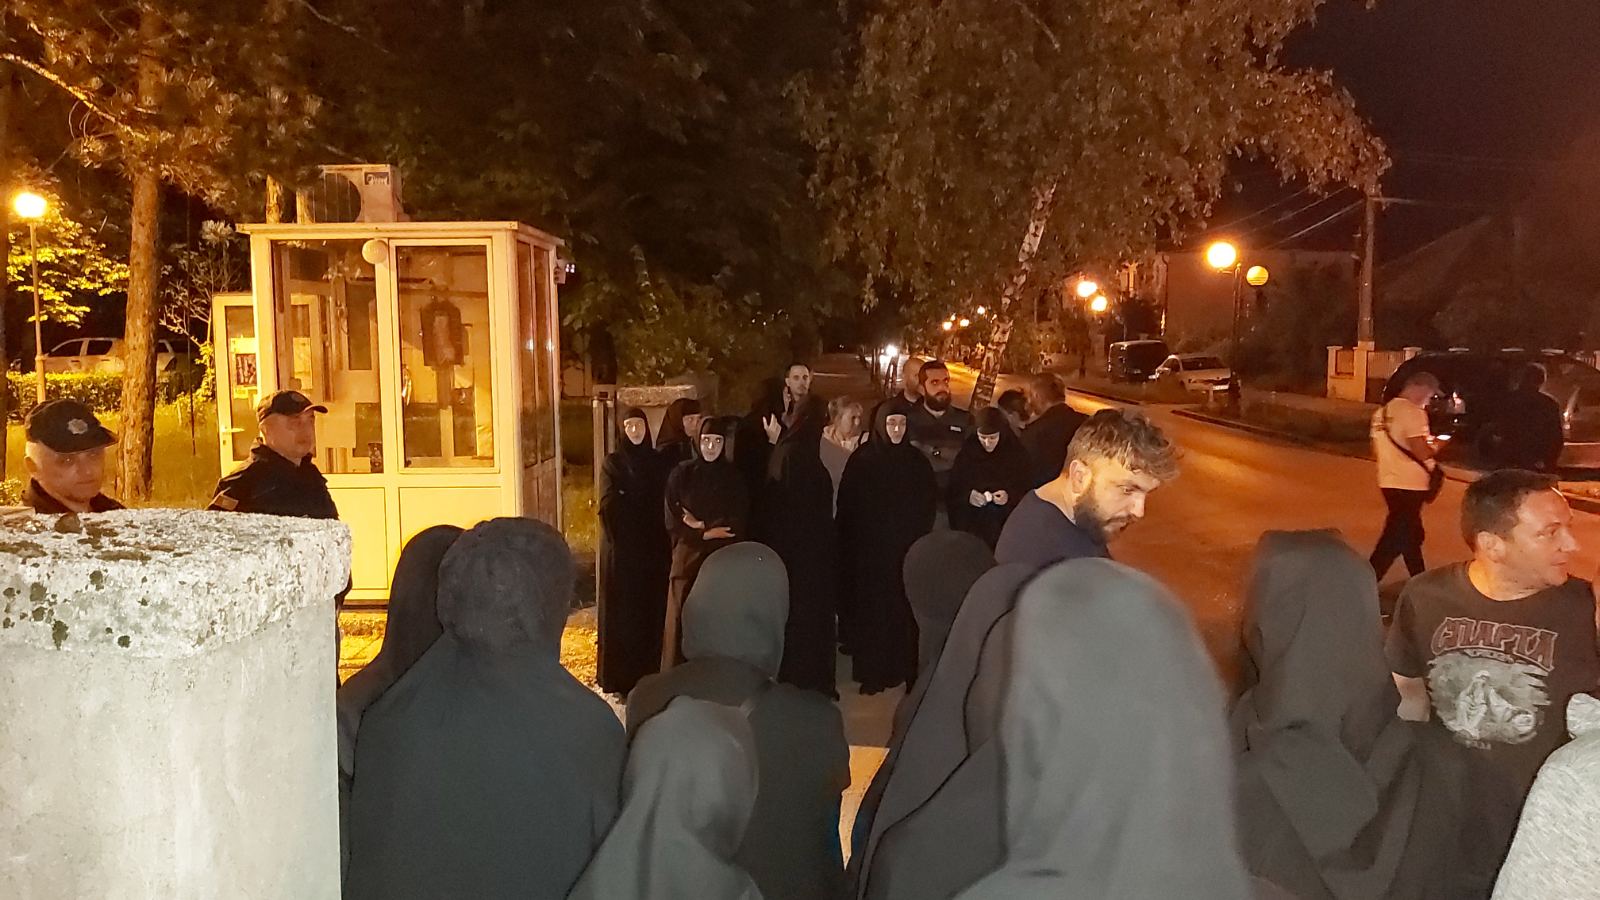 Вечерас један од најачих удара на свештенство у Црној Гори: Свештеници хапшени, па пуштени, народ се окупљао да подржи парохе (ВИДЕО)